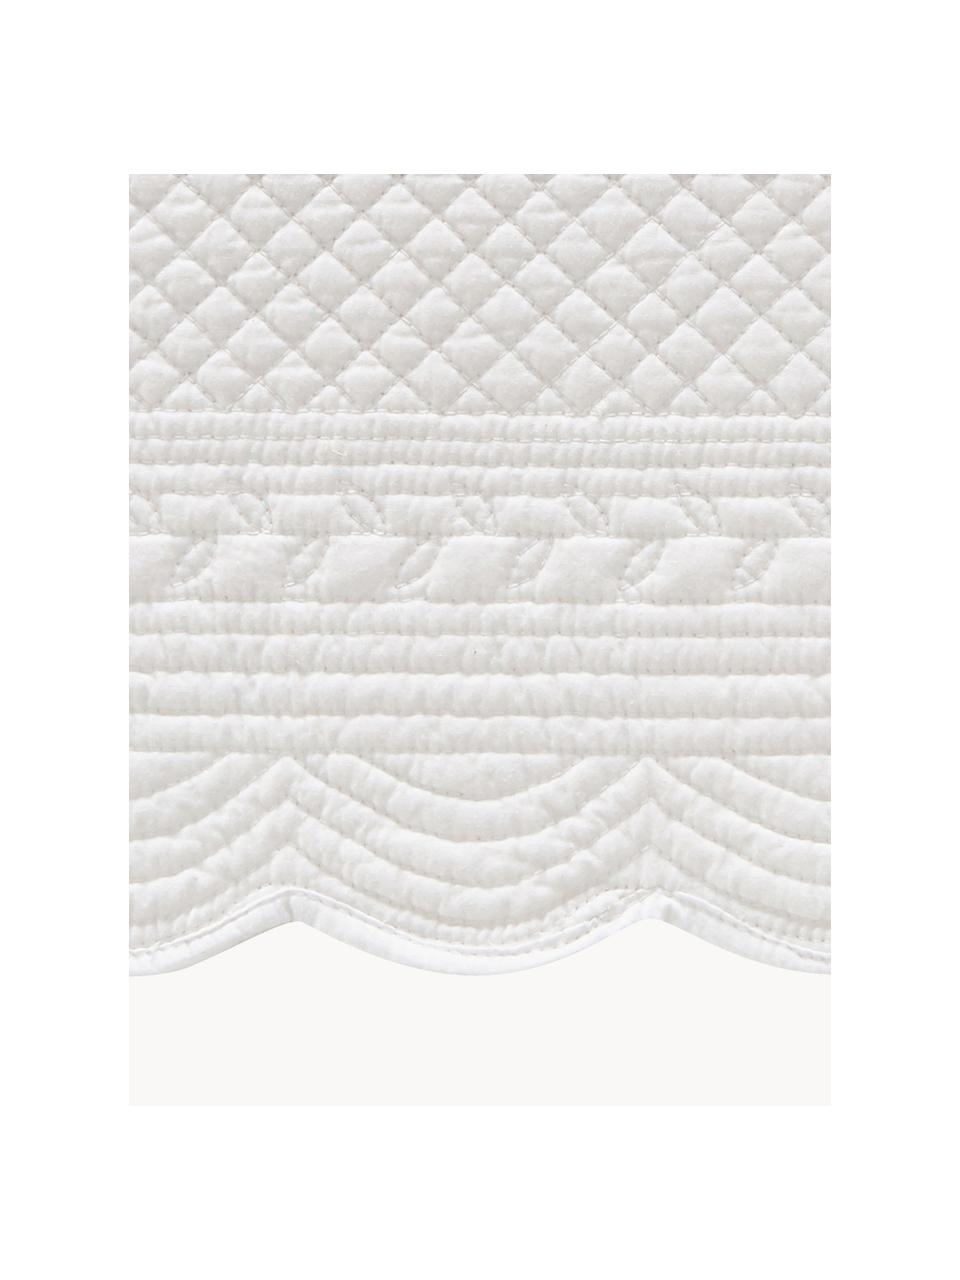 Podkładka Boutis, 2 szt., 100% bawełna, Biały, S 34 x D 48 cm